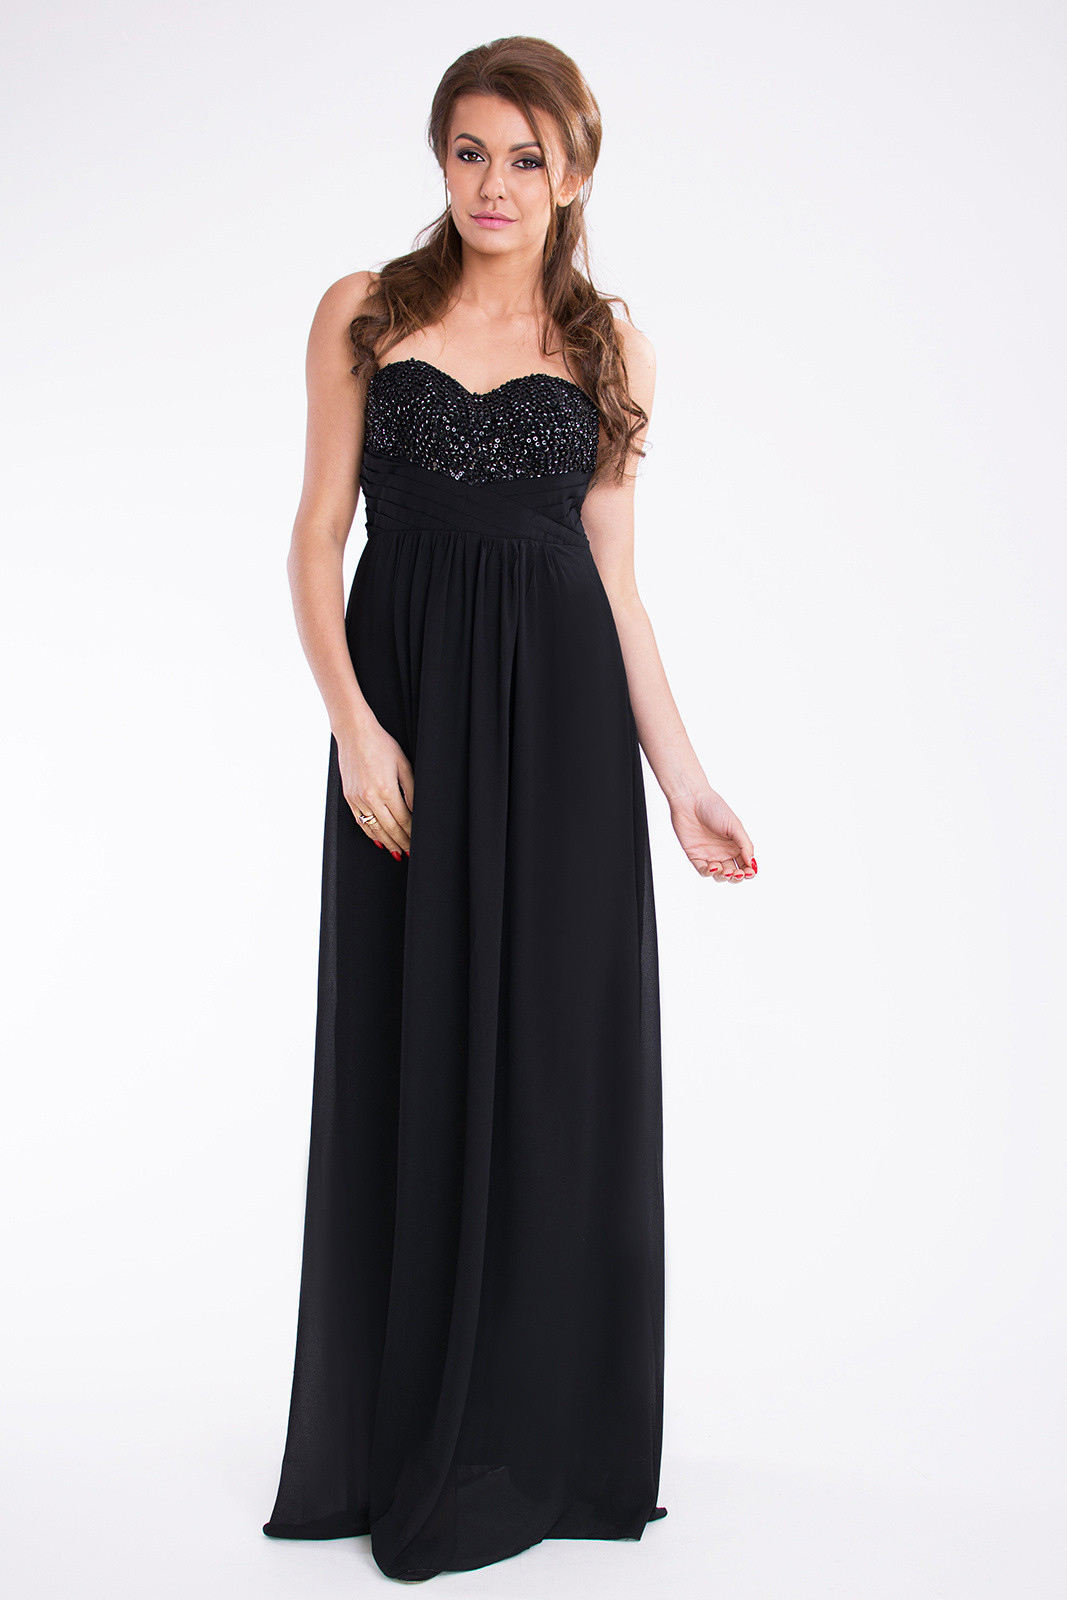 Dámské dlouhé společenské šaty černé Černá / M PINK model 15042815 - PINK BOOM Velikost: M, Barvy: černá